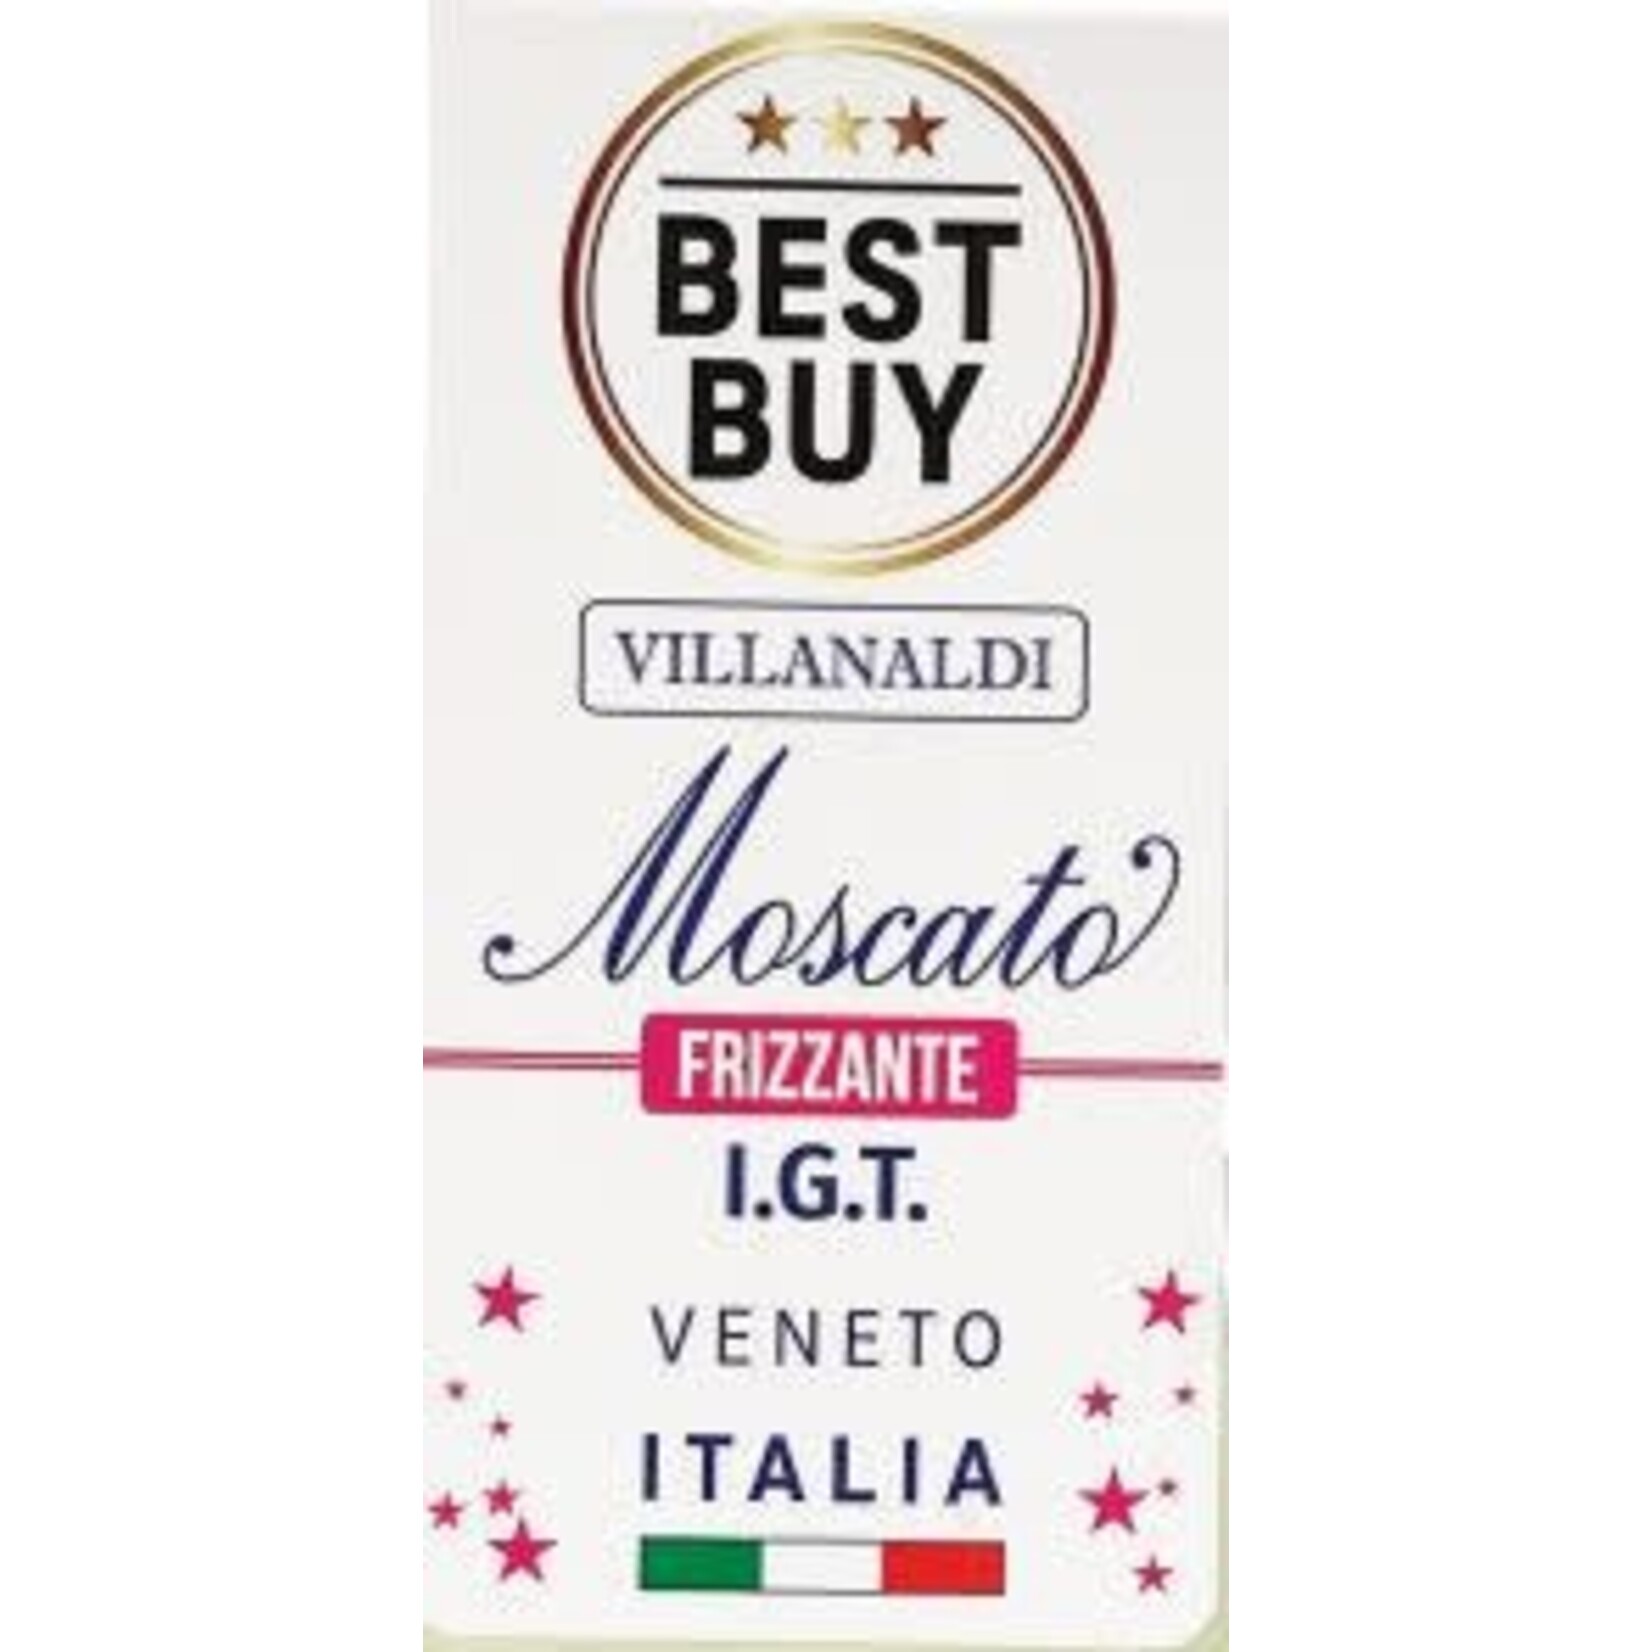 Villanaldi Villanaldi Moscato Frizzante  Italy Discontinued